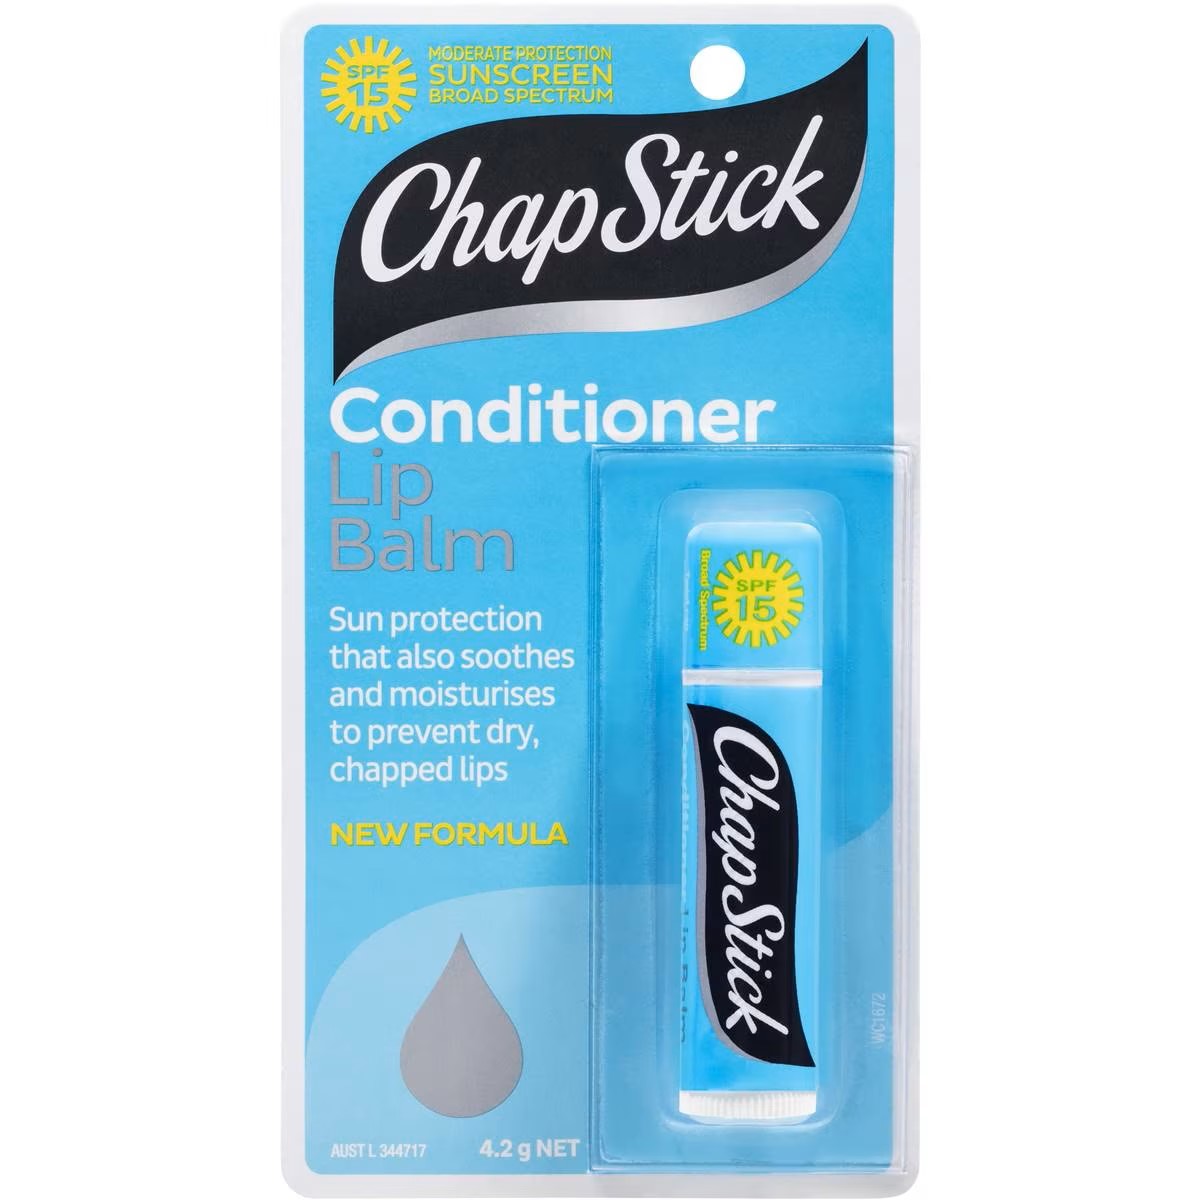 Chap Stick  Conditioner Lip Balm 4.2g